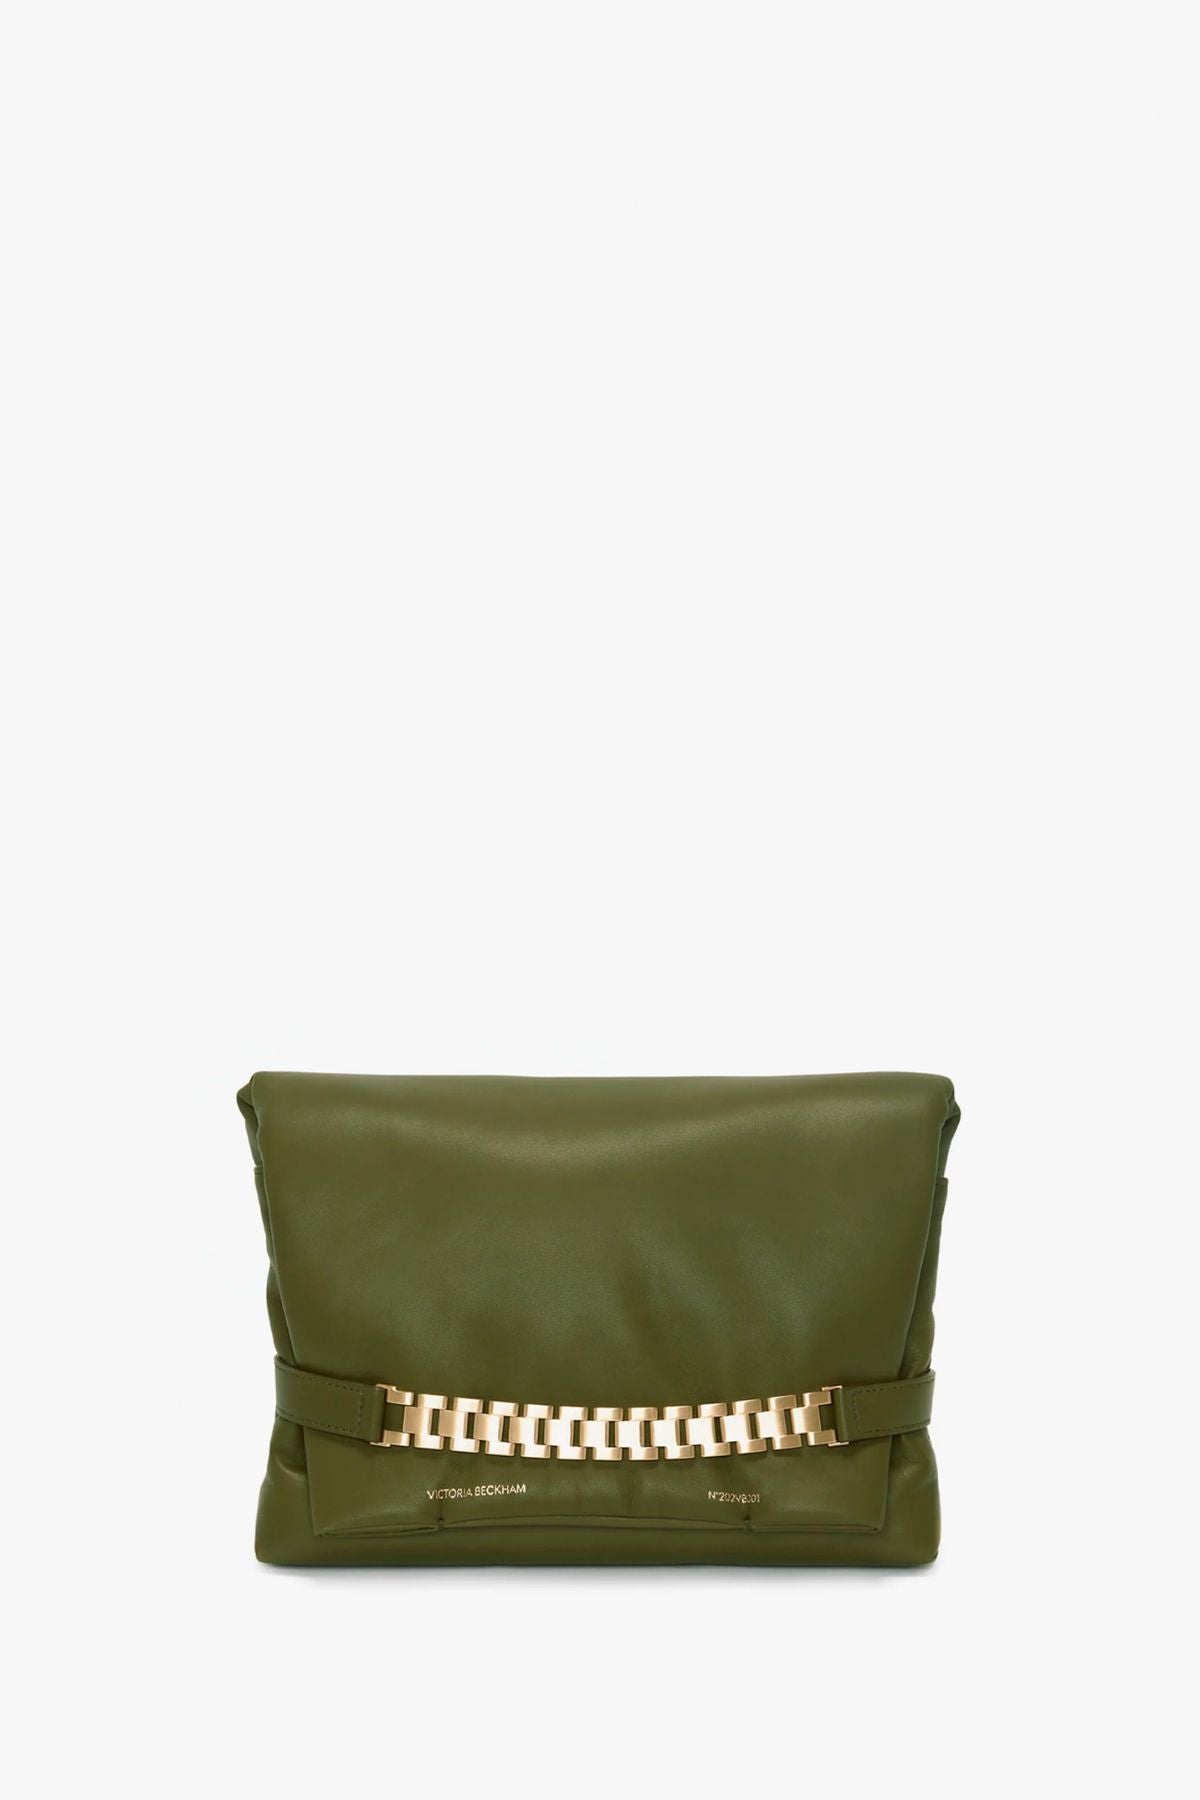 Victoria Beckham Puffy Chain Pouch Bag - Khaki